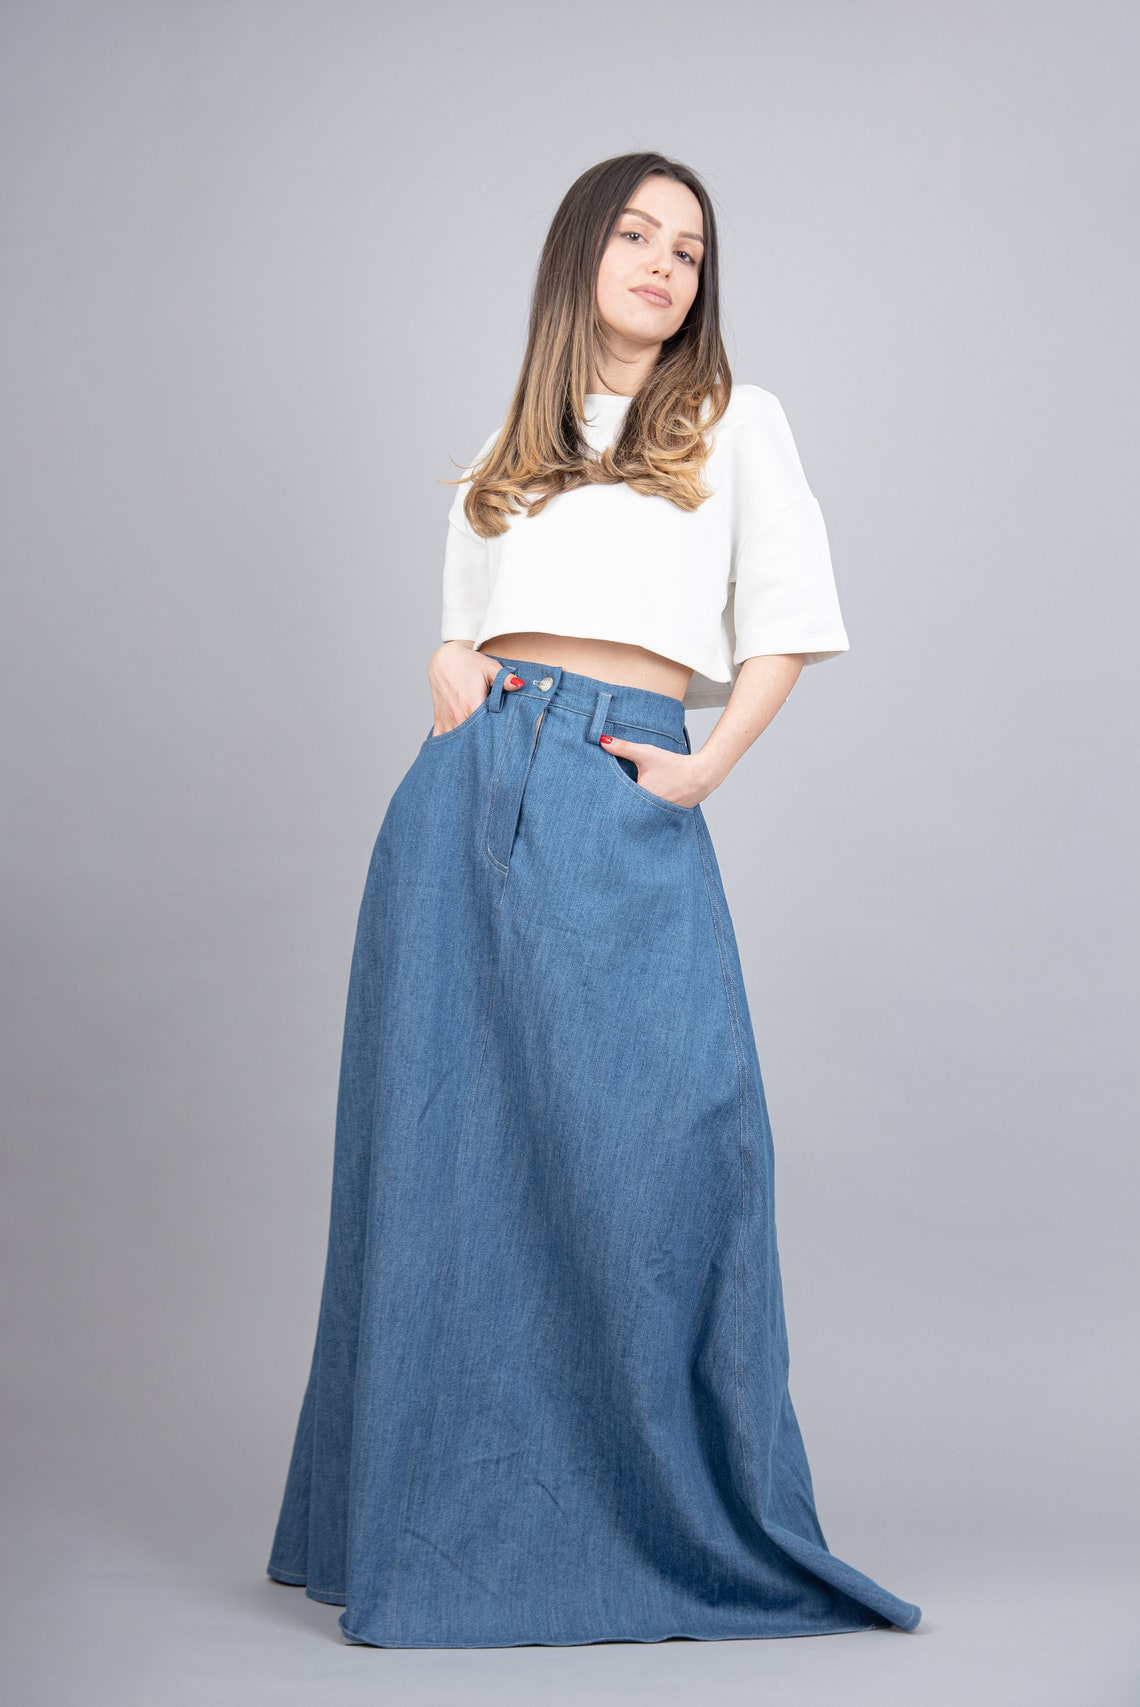 Maxi Skirt/denim Oversized Skirt/jean Skirt/casual Maxi - Etsy